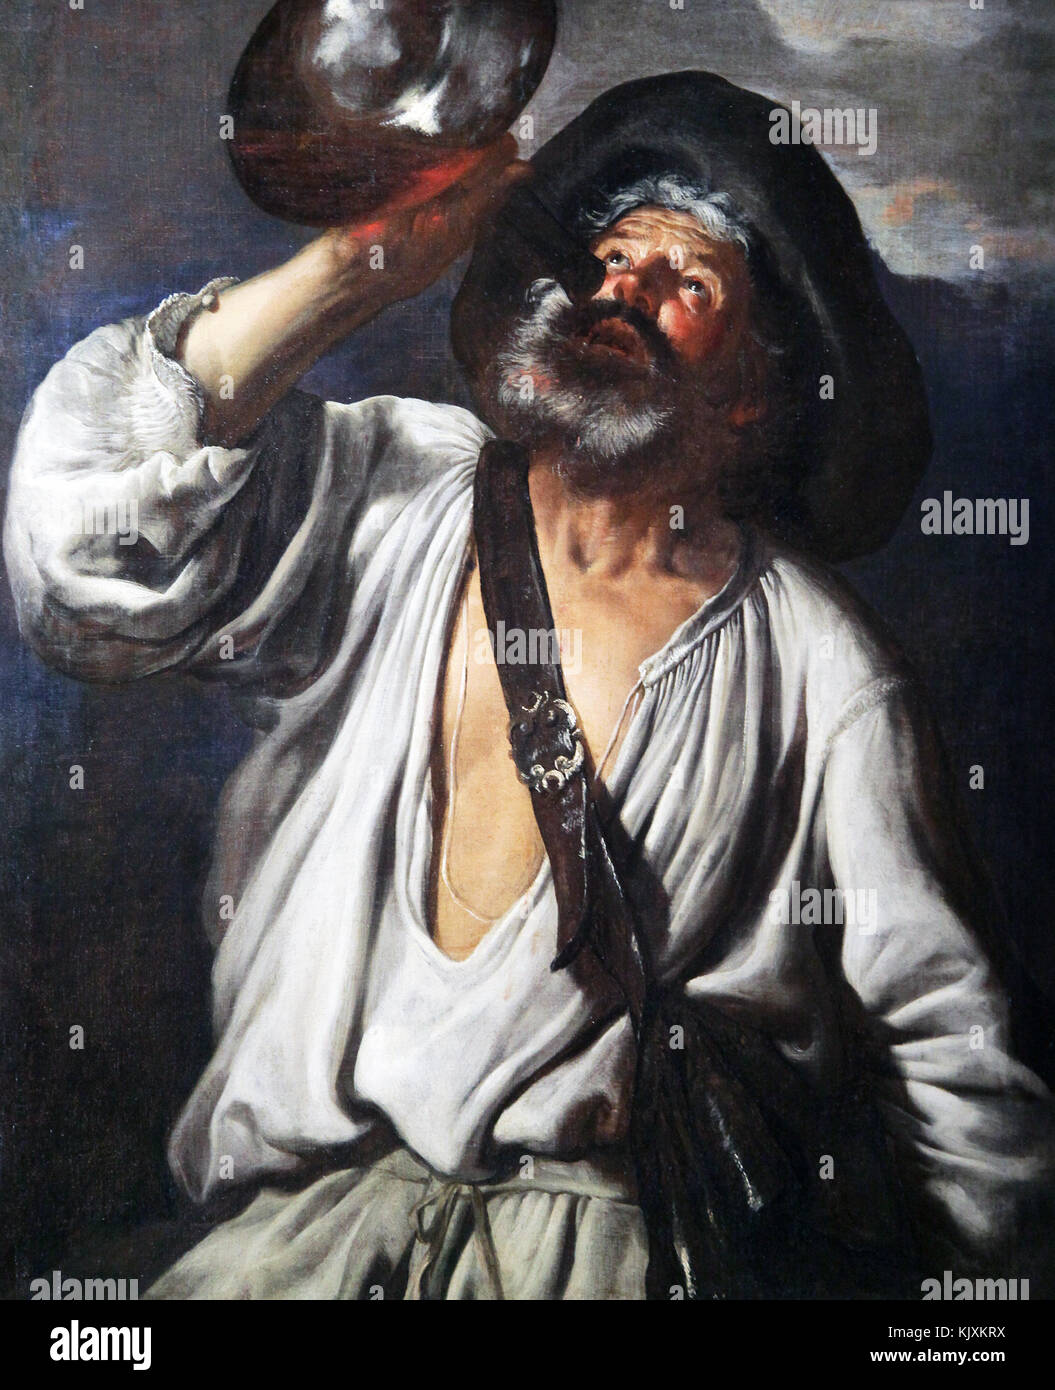 Pintura ;Campesino bebiendo de una calabaza . c. Siglo 1645.17imitación de impresión artística de Caravaggio Foto de stock